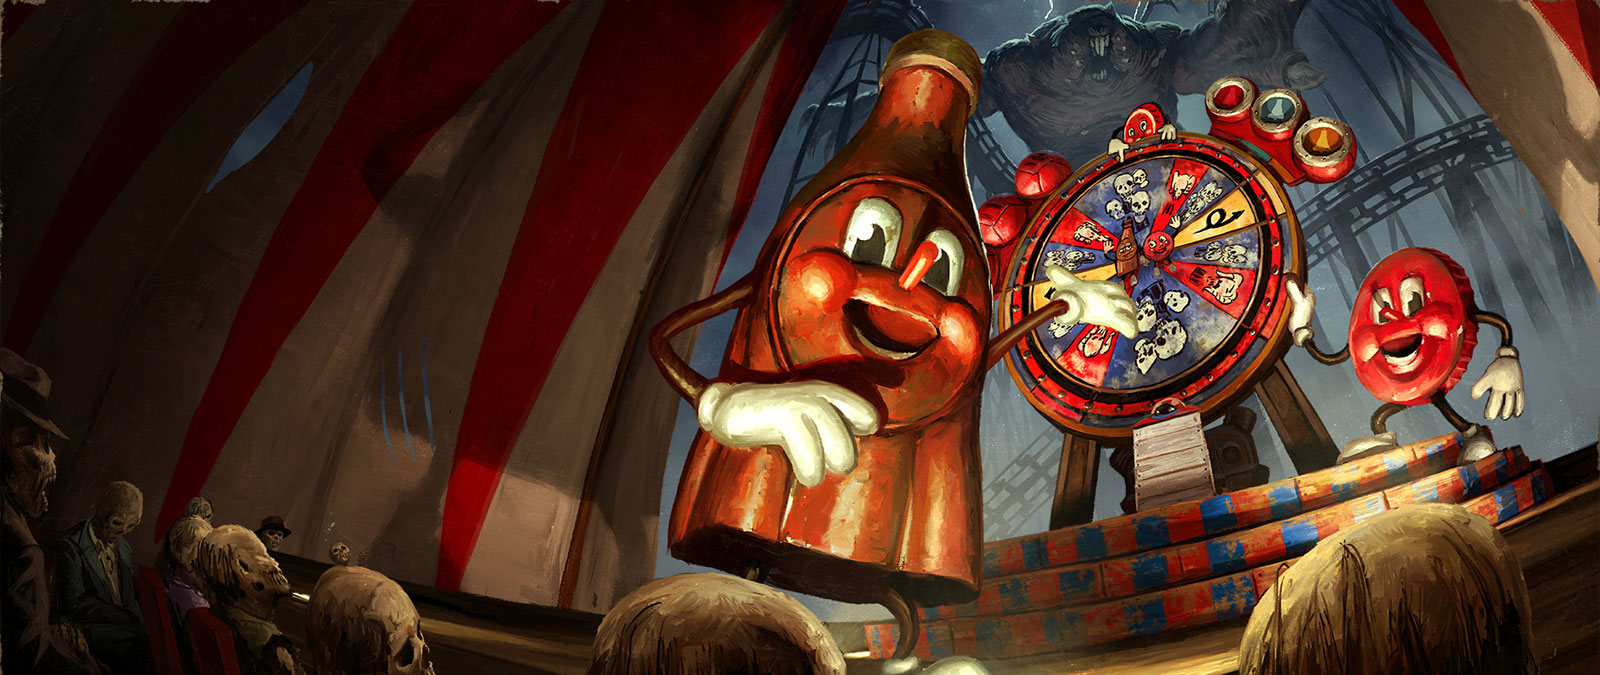 In een circustent presenteren twee Nuka Cola-mascottes een verdachte roulette.